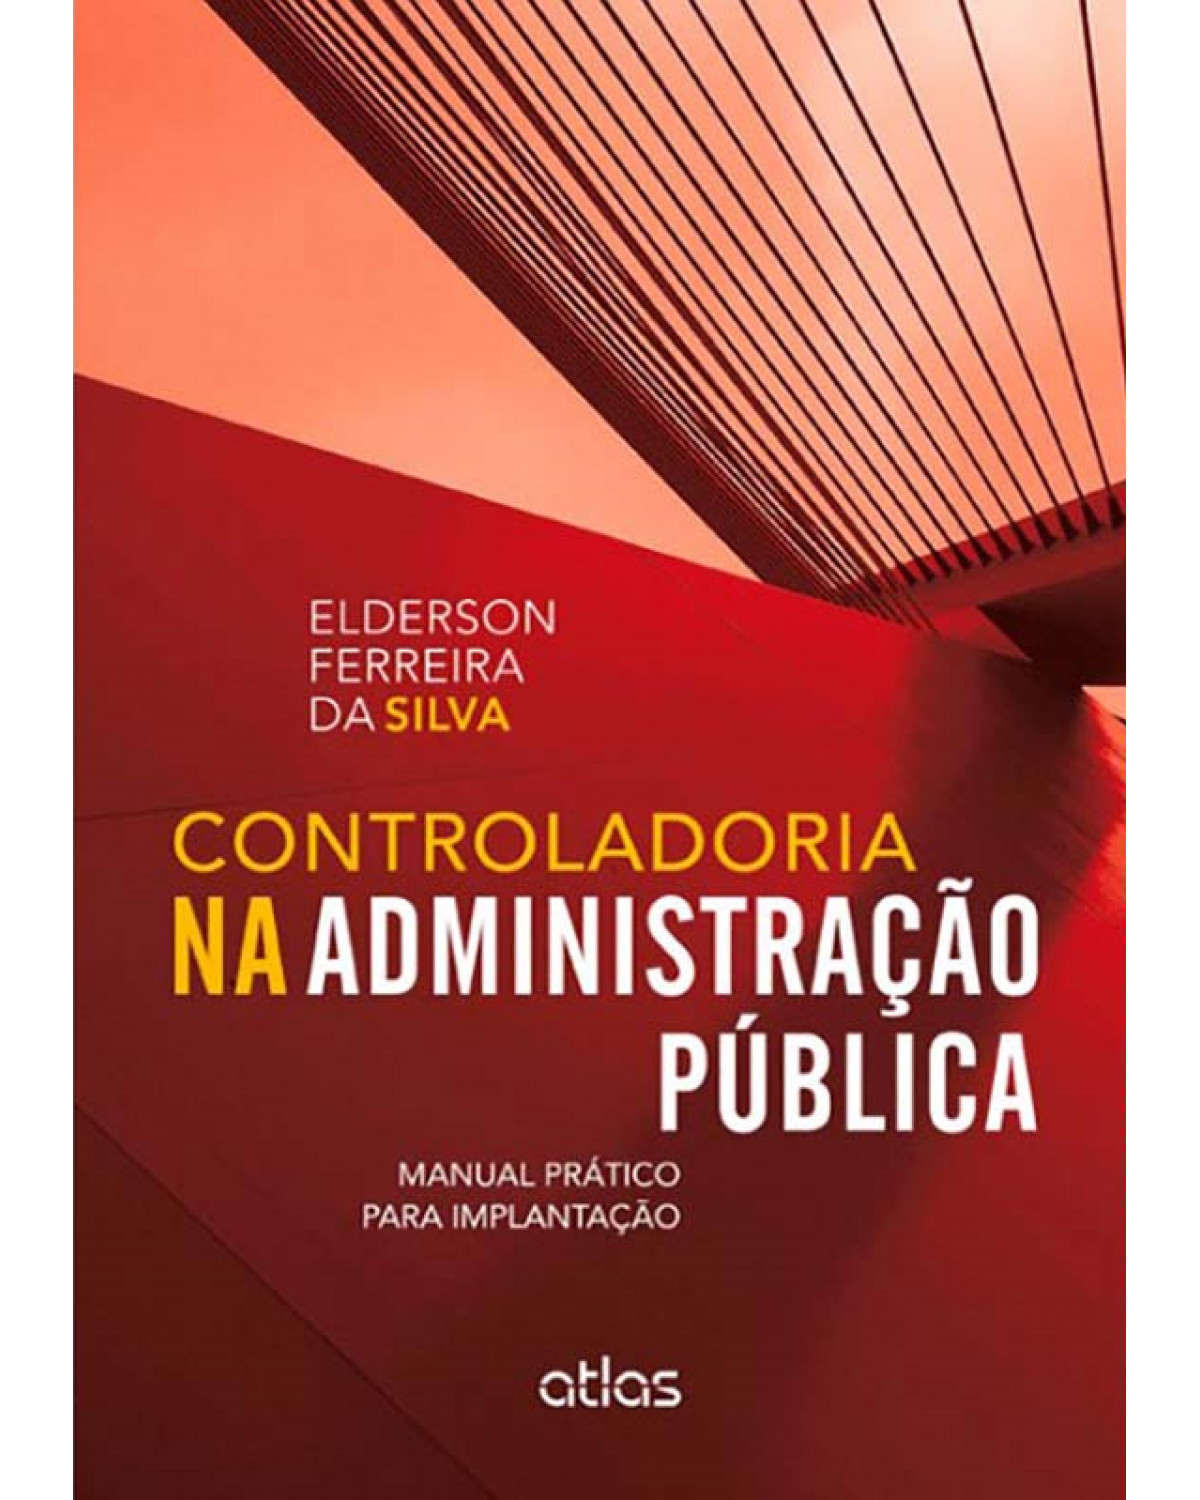 Controladoria na administração pública - Manual prático para implantação - 1ª Edição | 2013